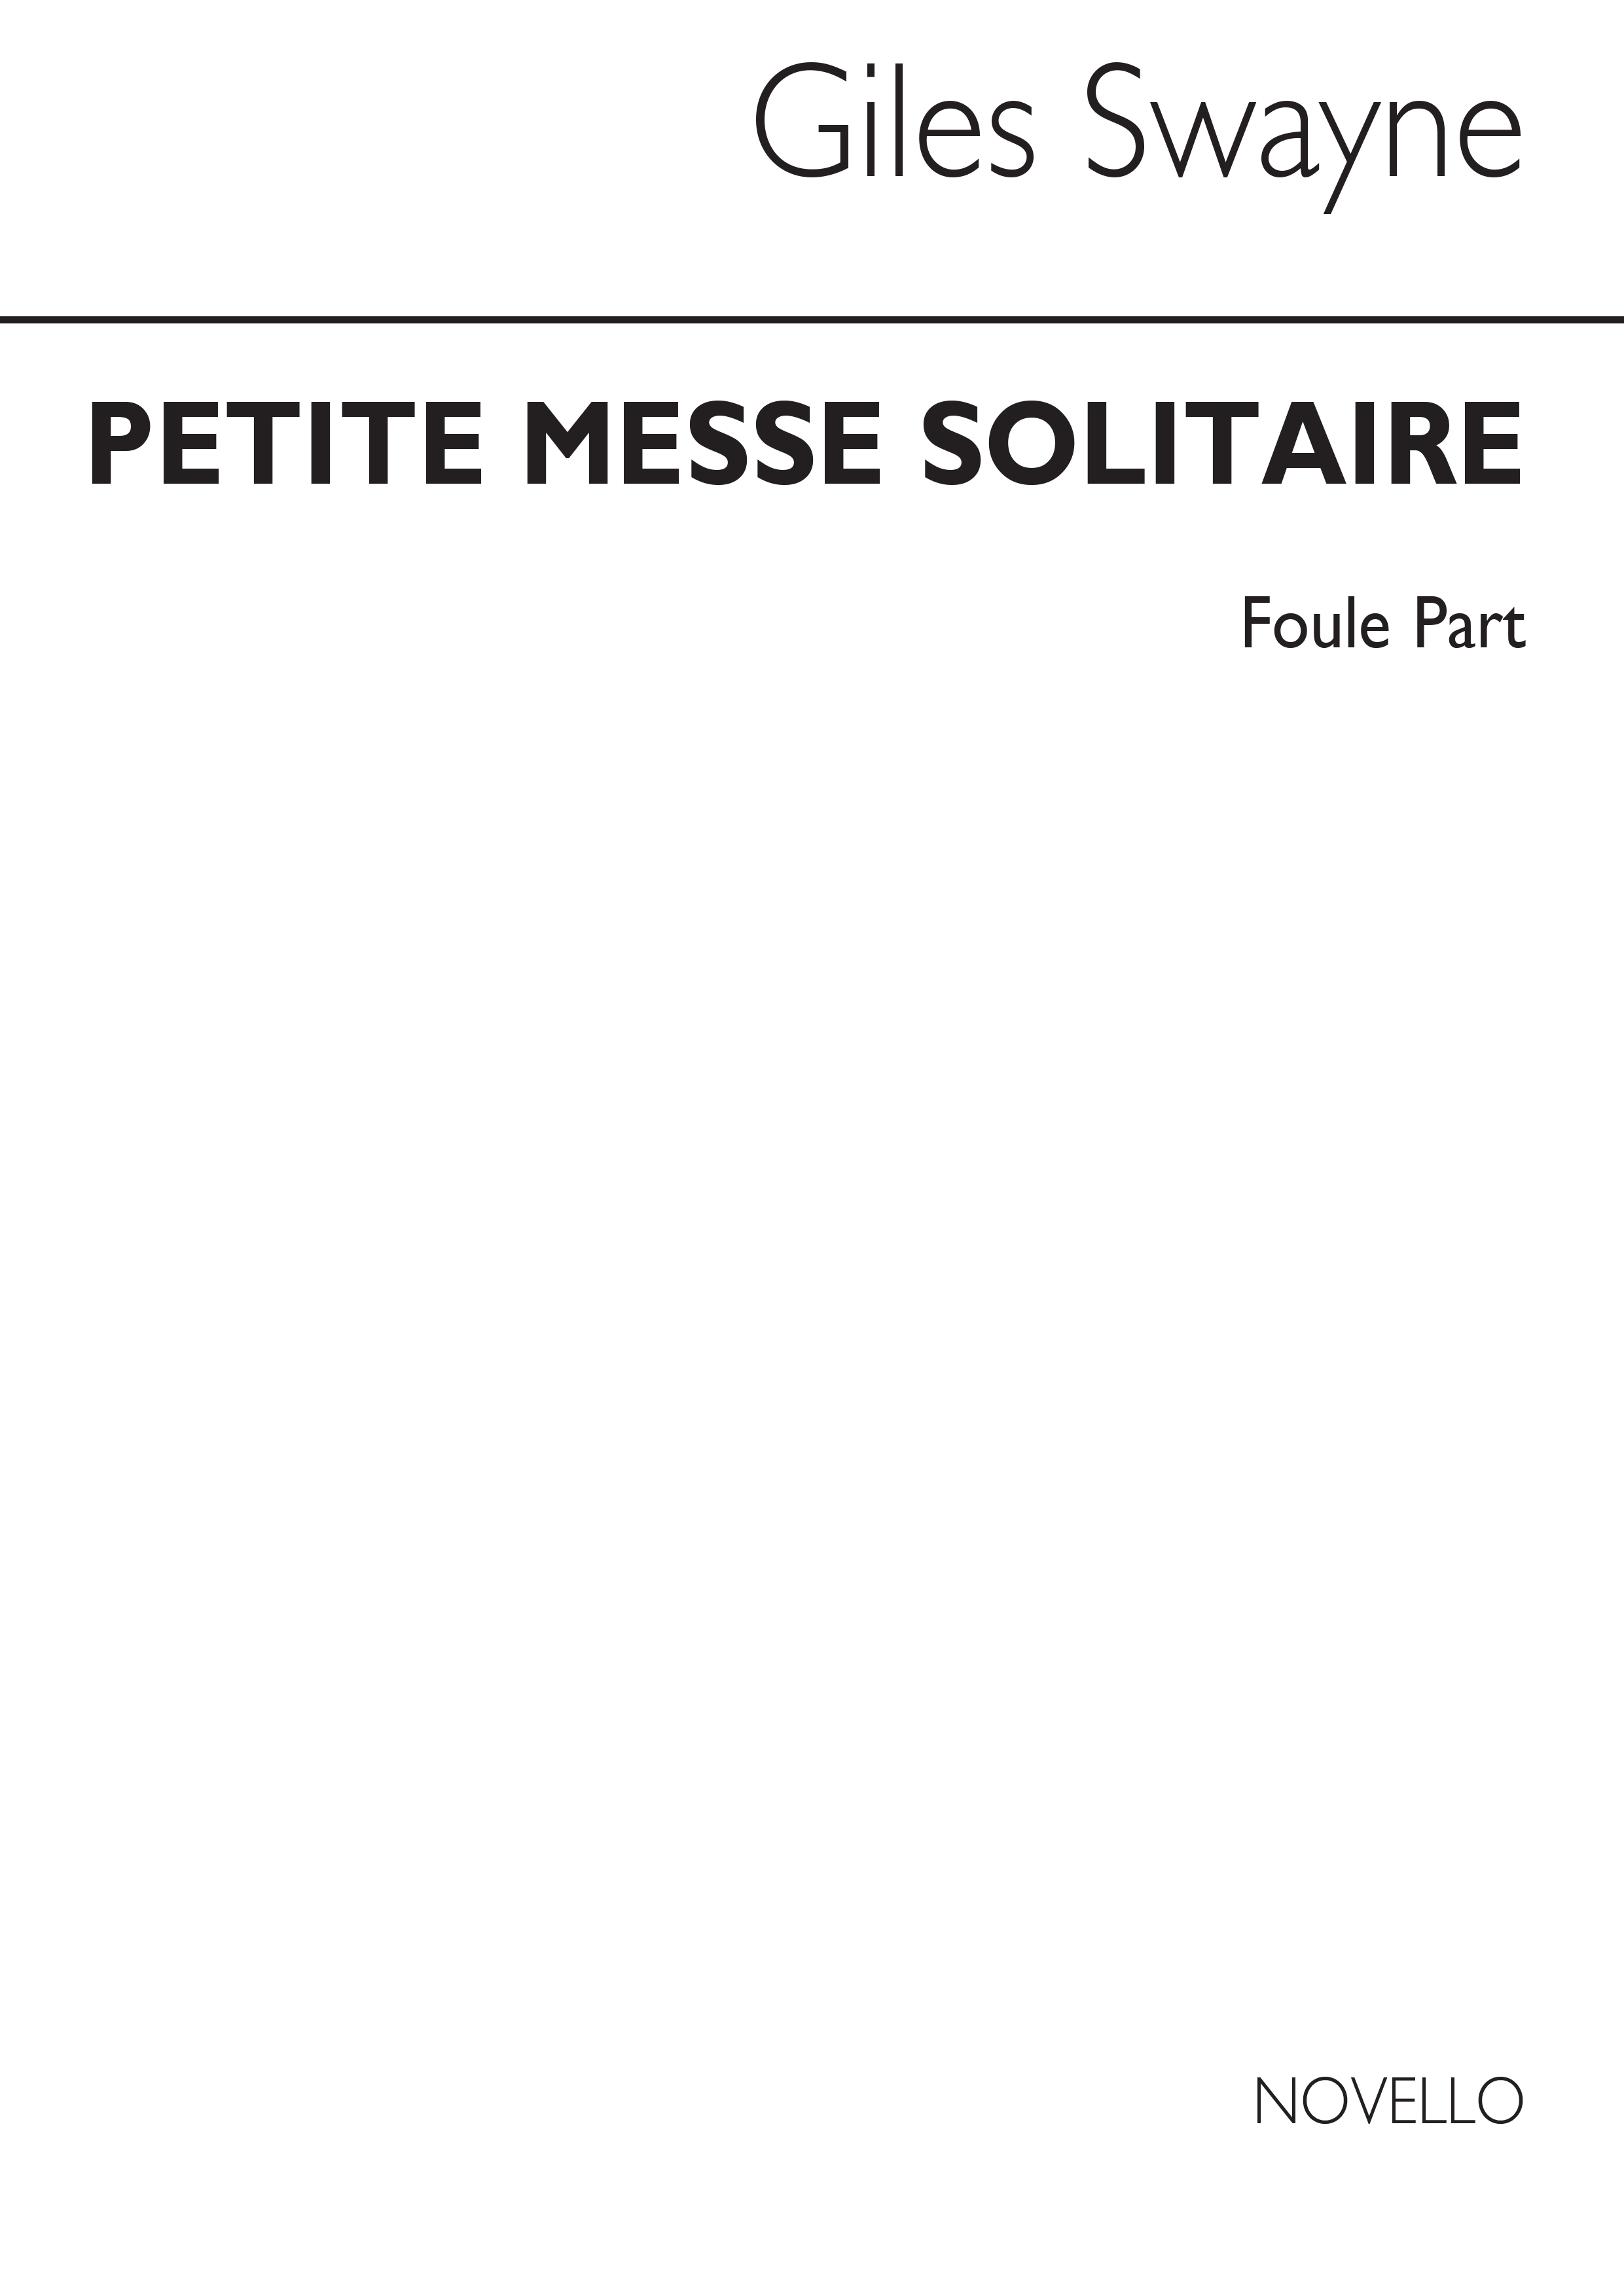 Giles Swayne: Petite Messe Solitaire Foule for Unison Voices: Unison Voices: